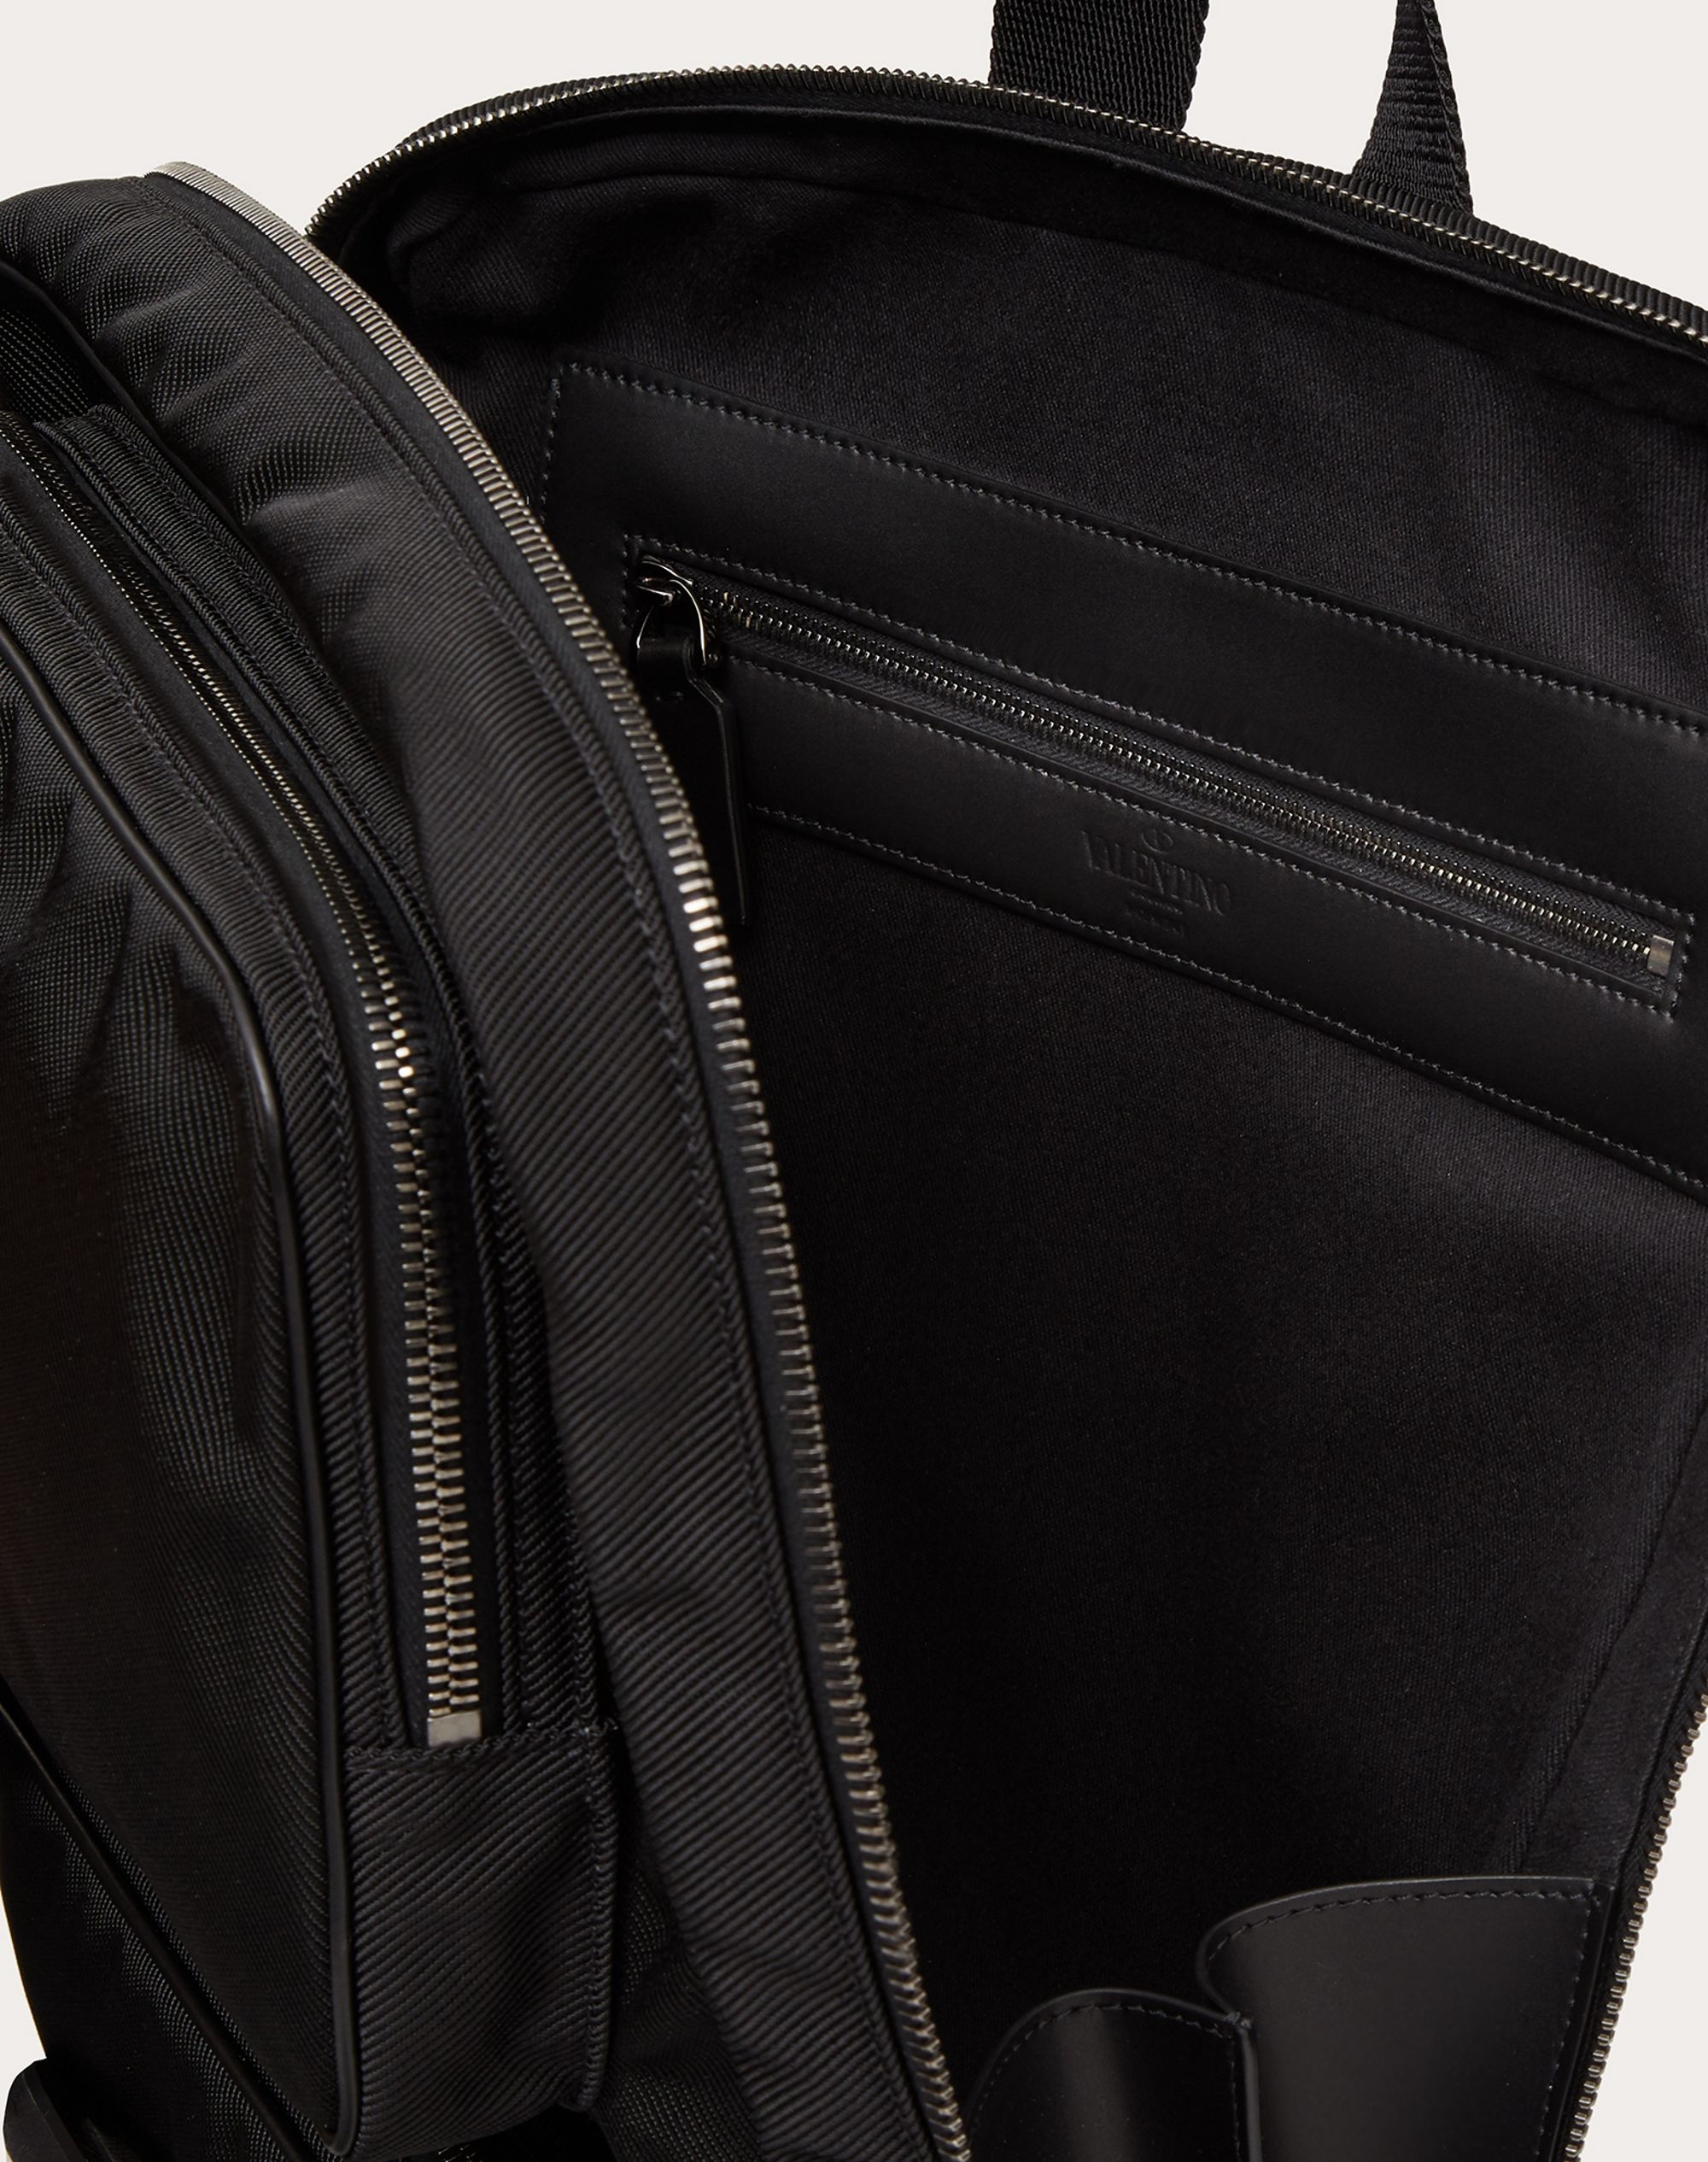 Supervee Backpack in Nylon - 4